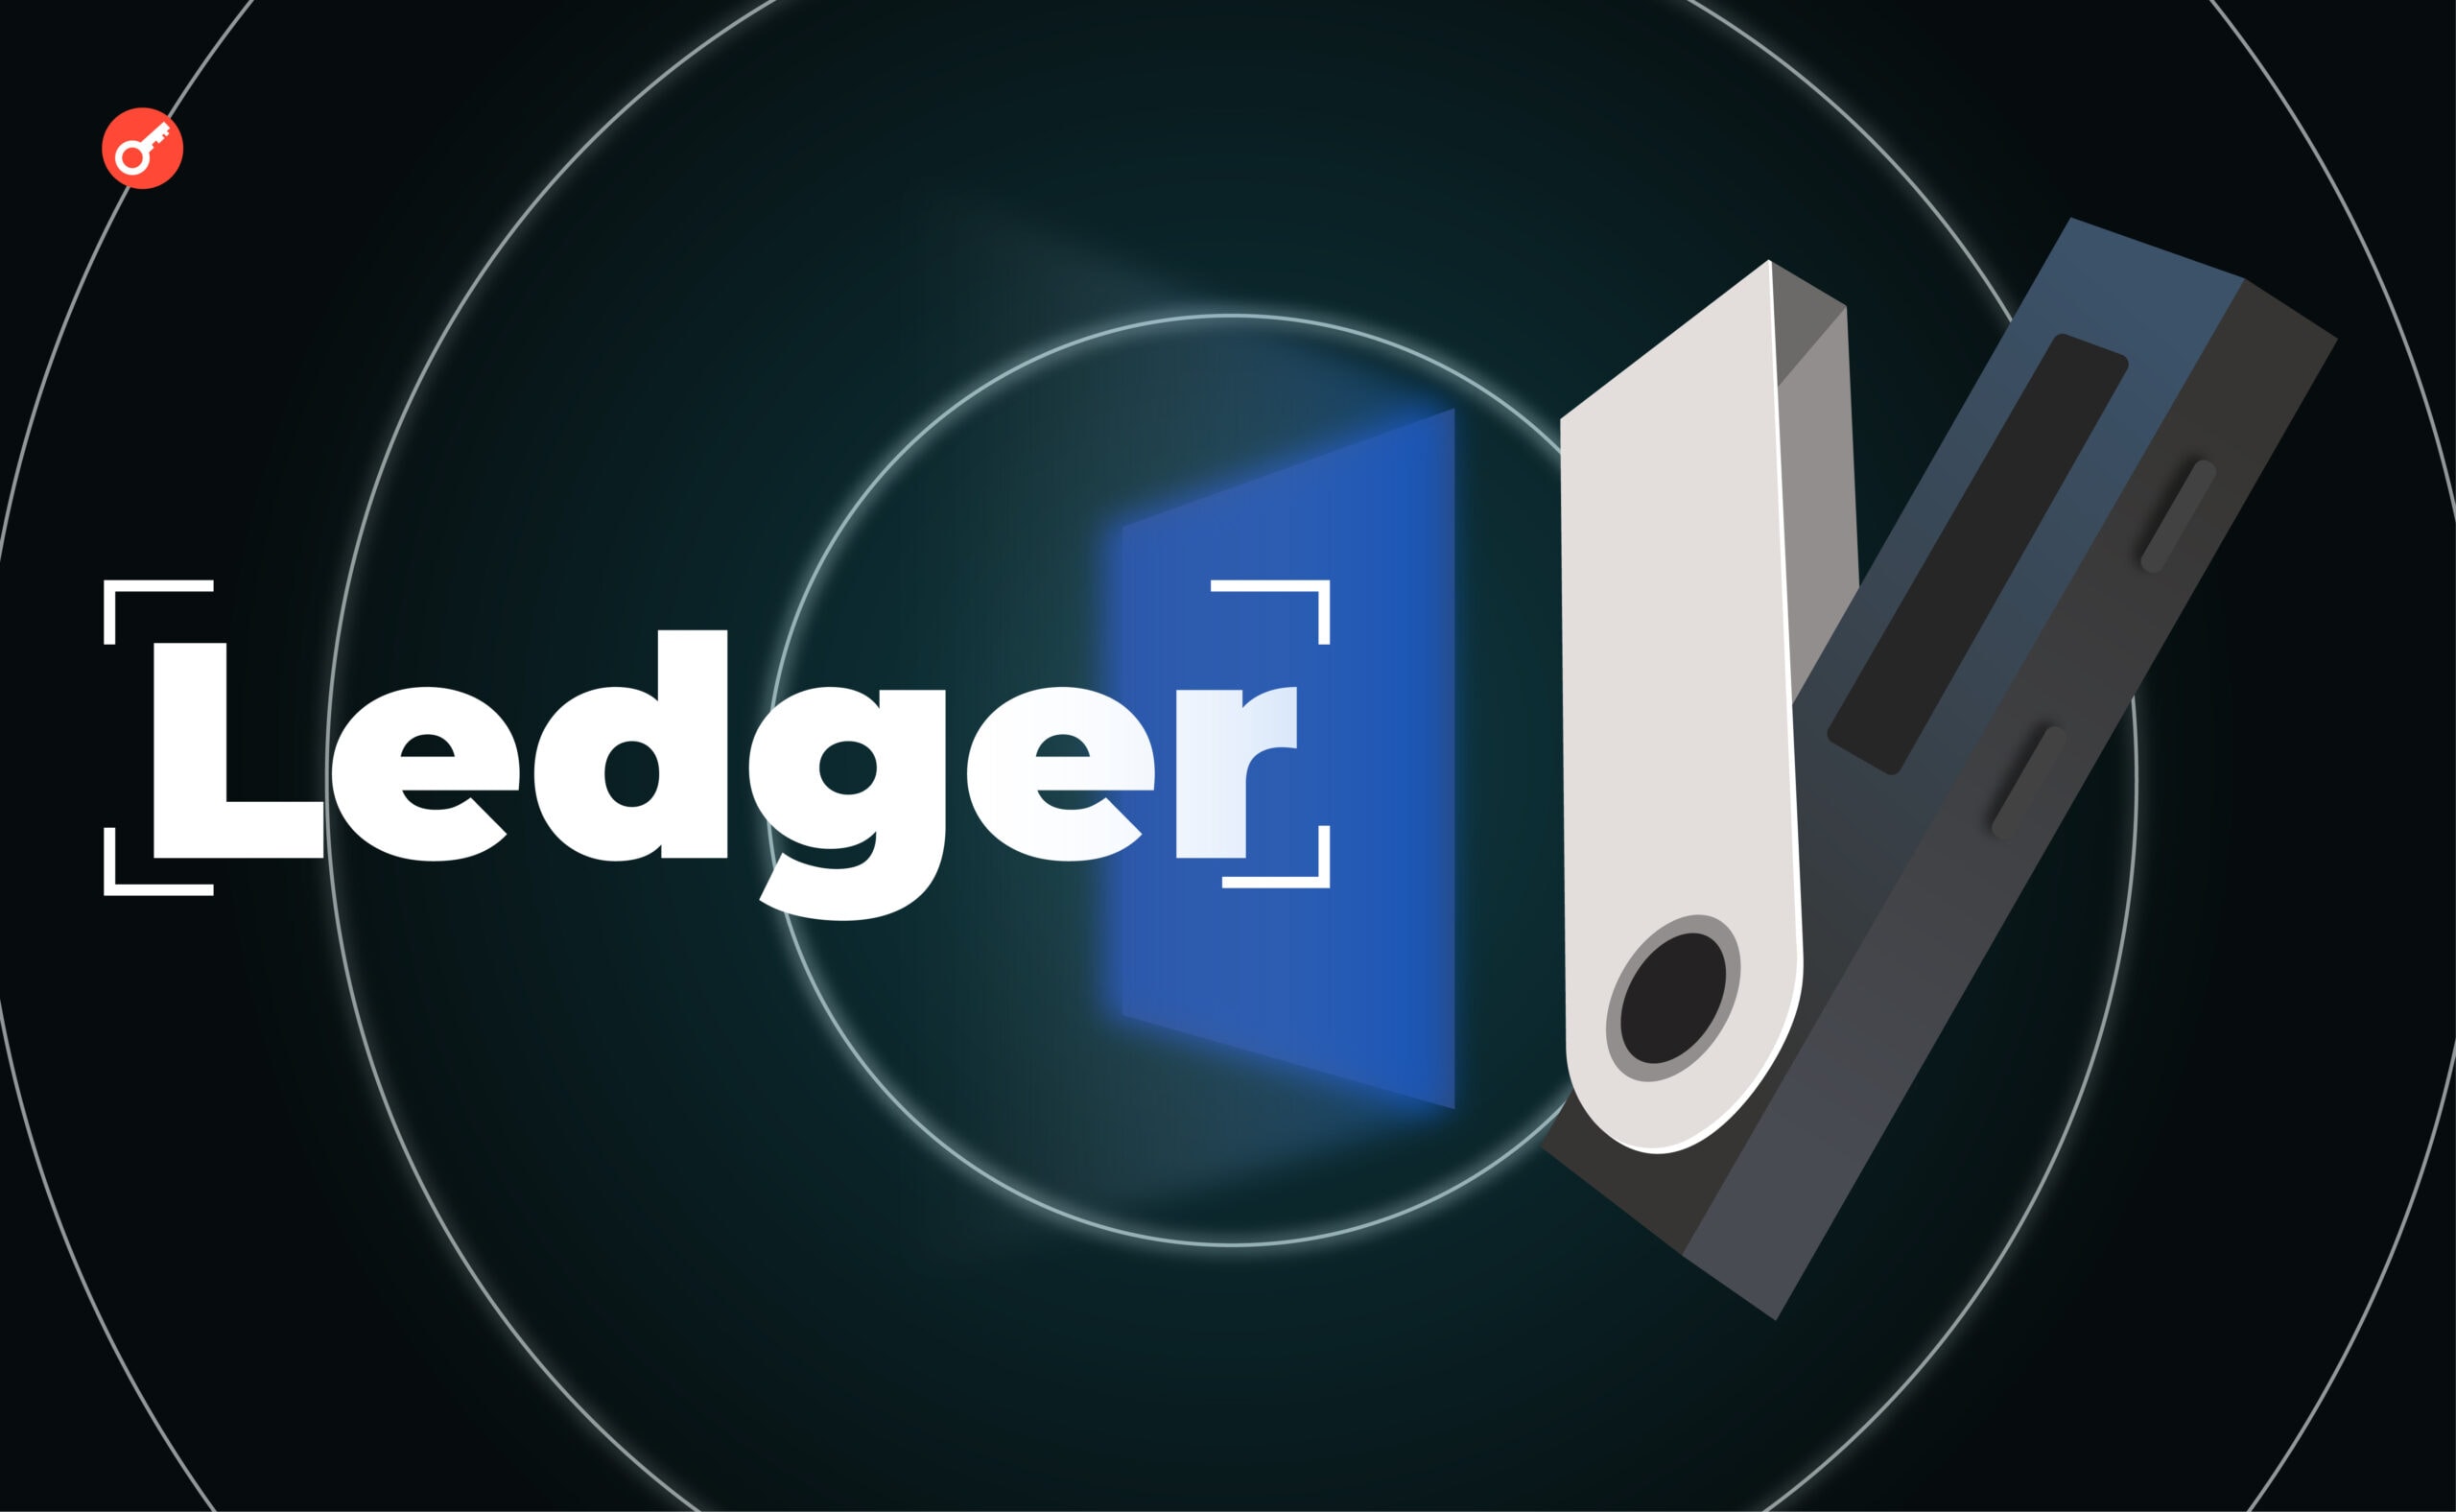 Ledger спробували виправдатися після скандалу на тлі чуток про ризик витоку даних користувачів. Головний колаж новини.